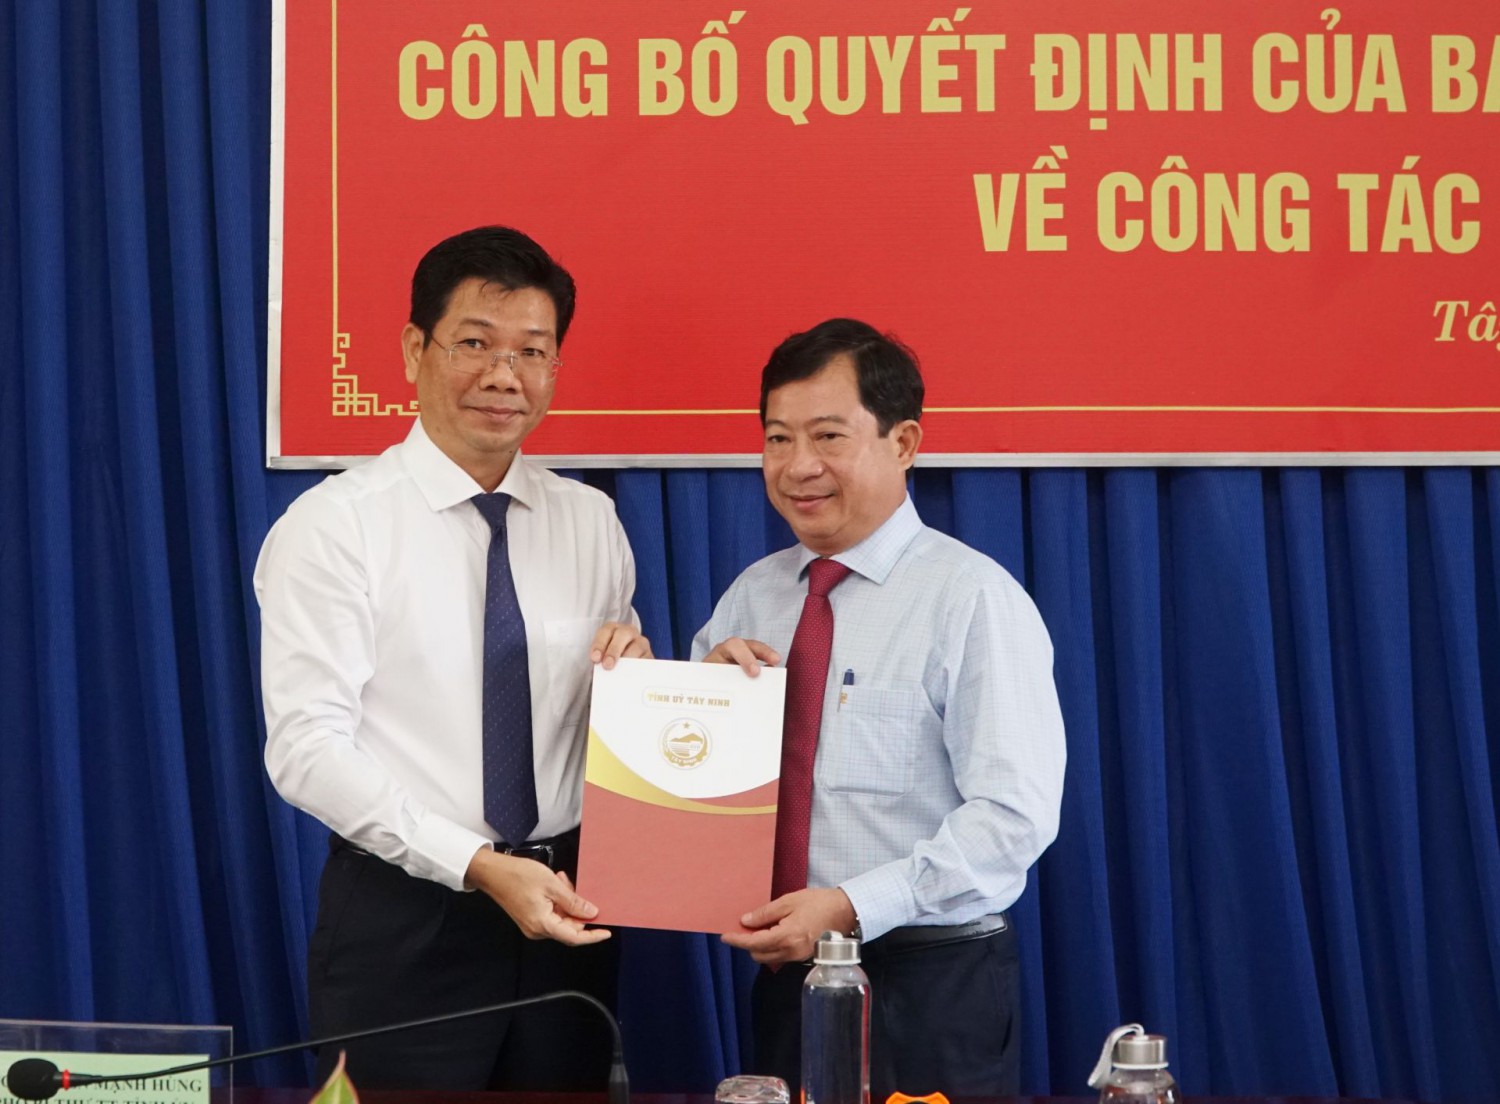 Ông Nguyễn Mạnh Hùng trao Quyết định bổ nhiệm ông Phạm Ngọc Hải giữ chức Hiệu Trưởng Trường Chính trị Tây Ninh.